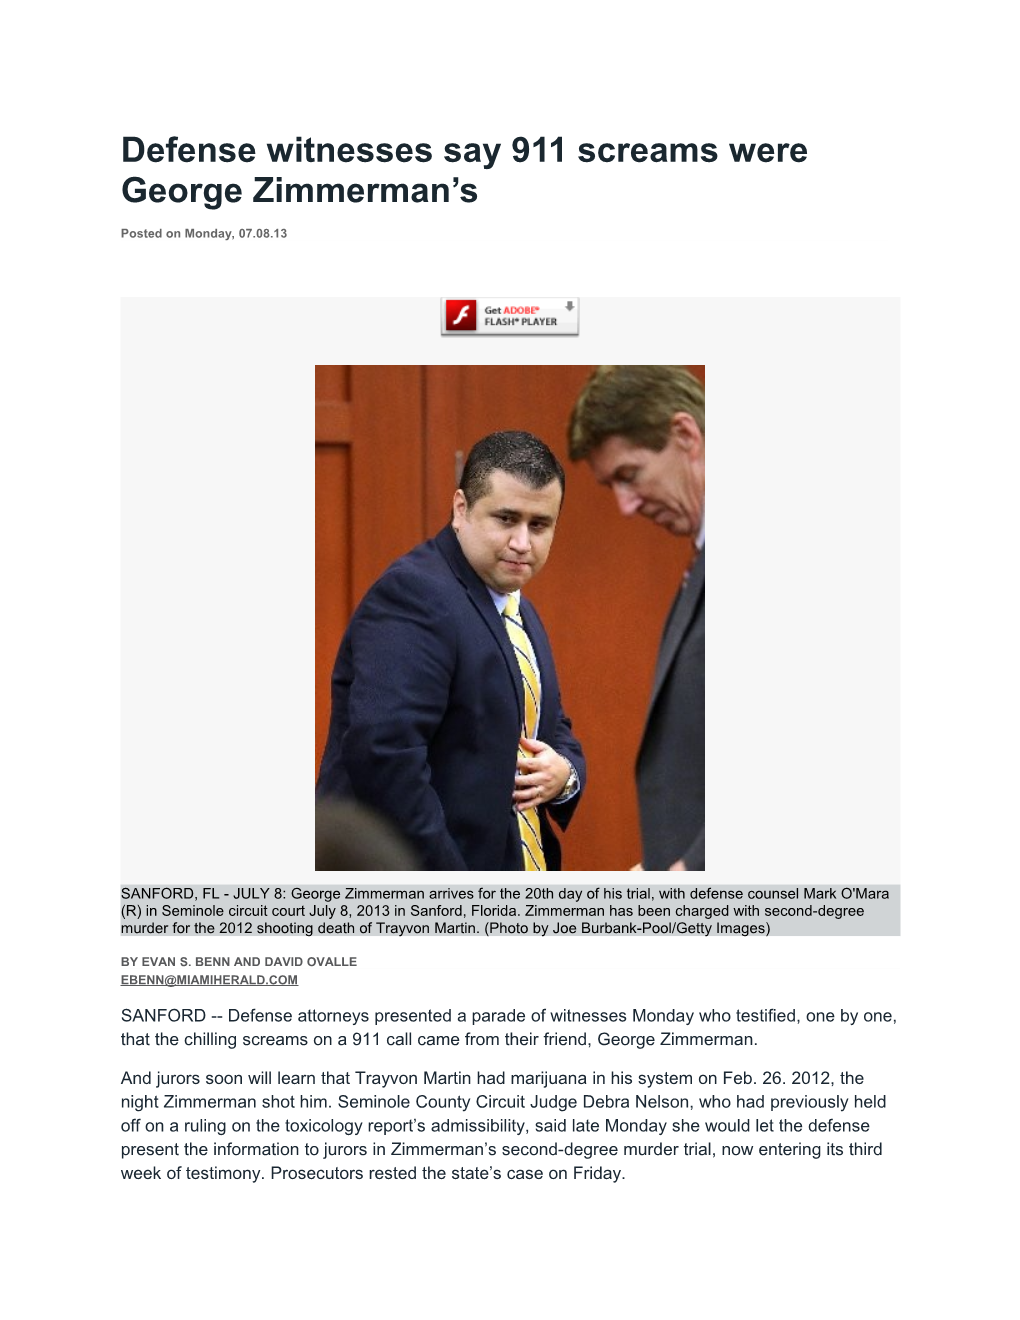 Defense Witnesses Say 911 Screams Were George Zimmerman S